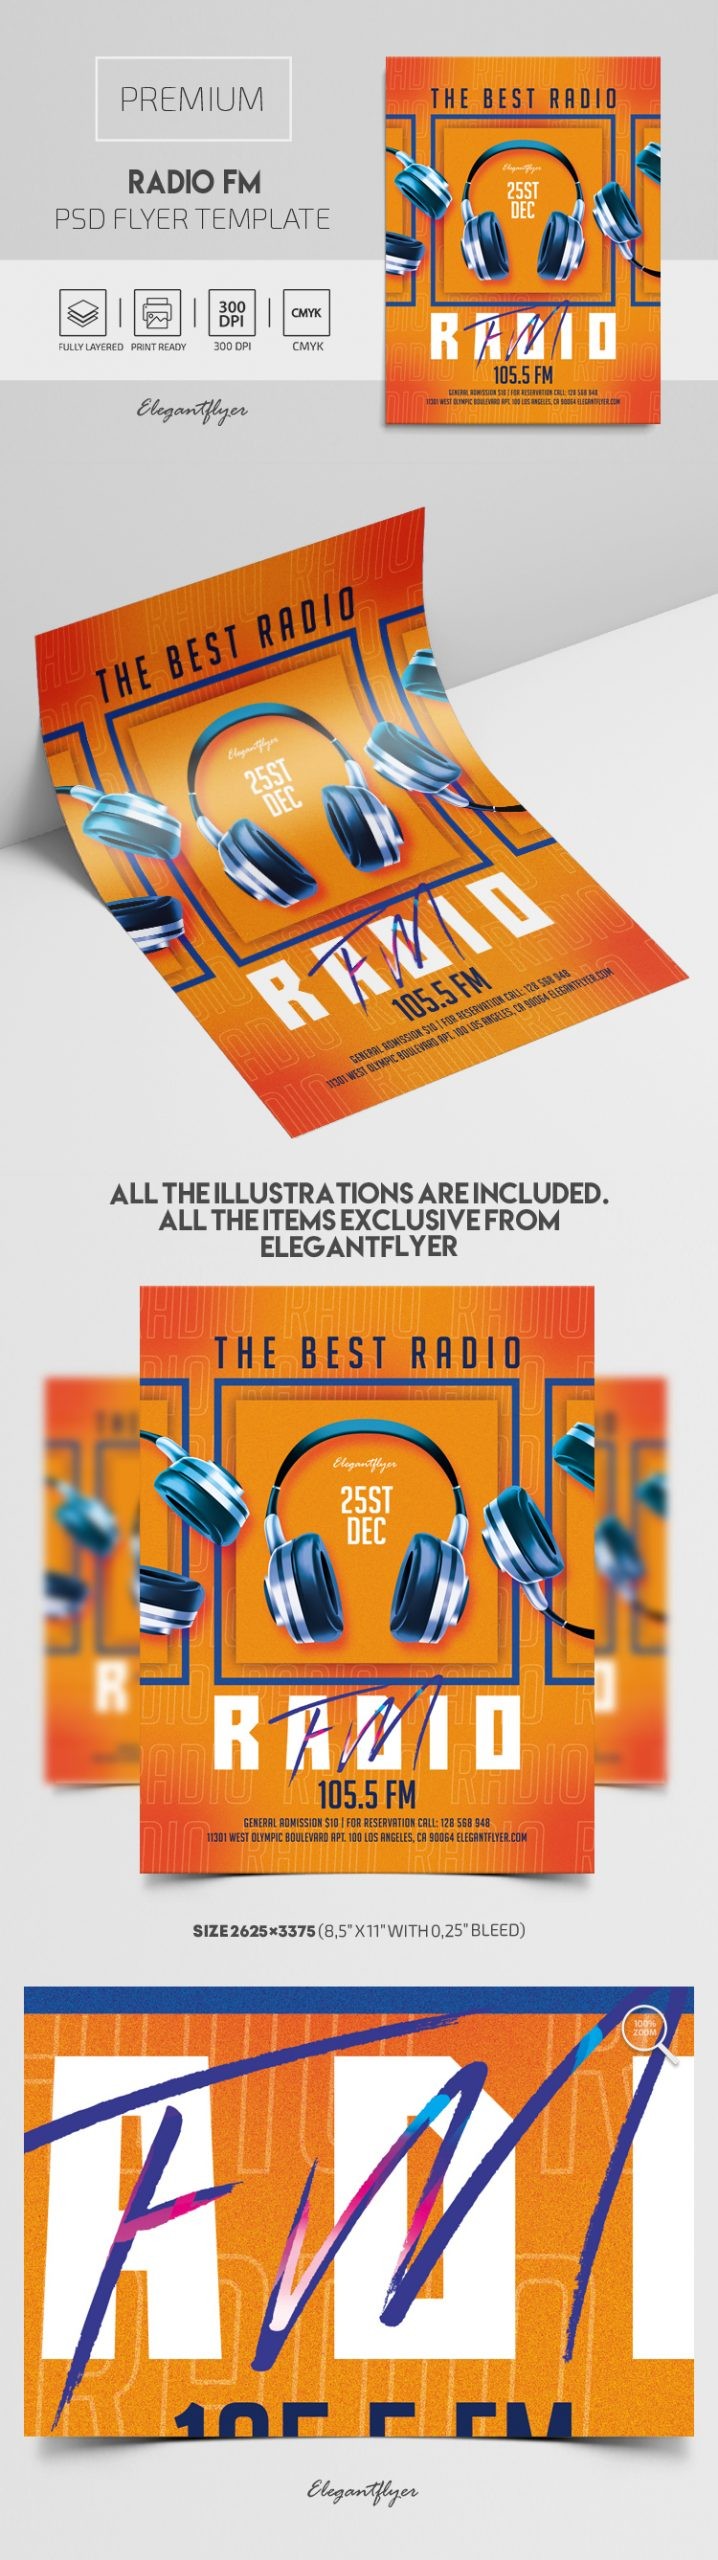 Radio FM by ElegantFlyer